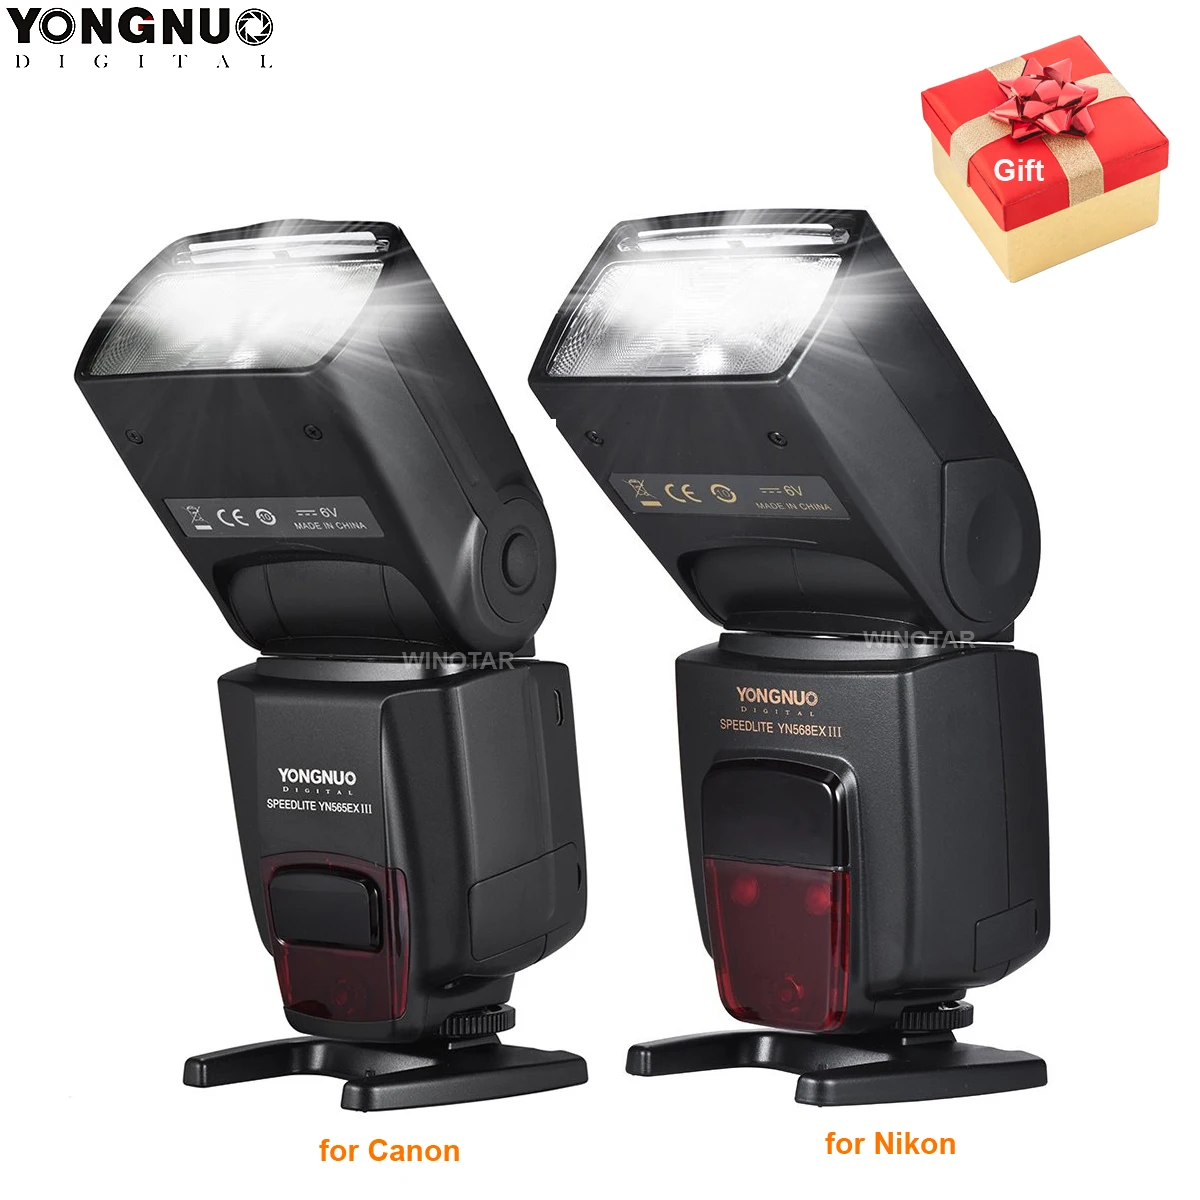 

YONGNUO YN568EX III YN-568EX III TTL Wireless HSS Flash Speedlite for Canon Nikon DSLR Camera Compatible YN600EX-RT II YN568EXII